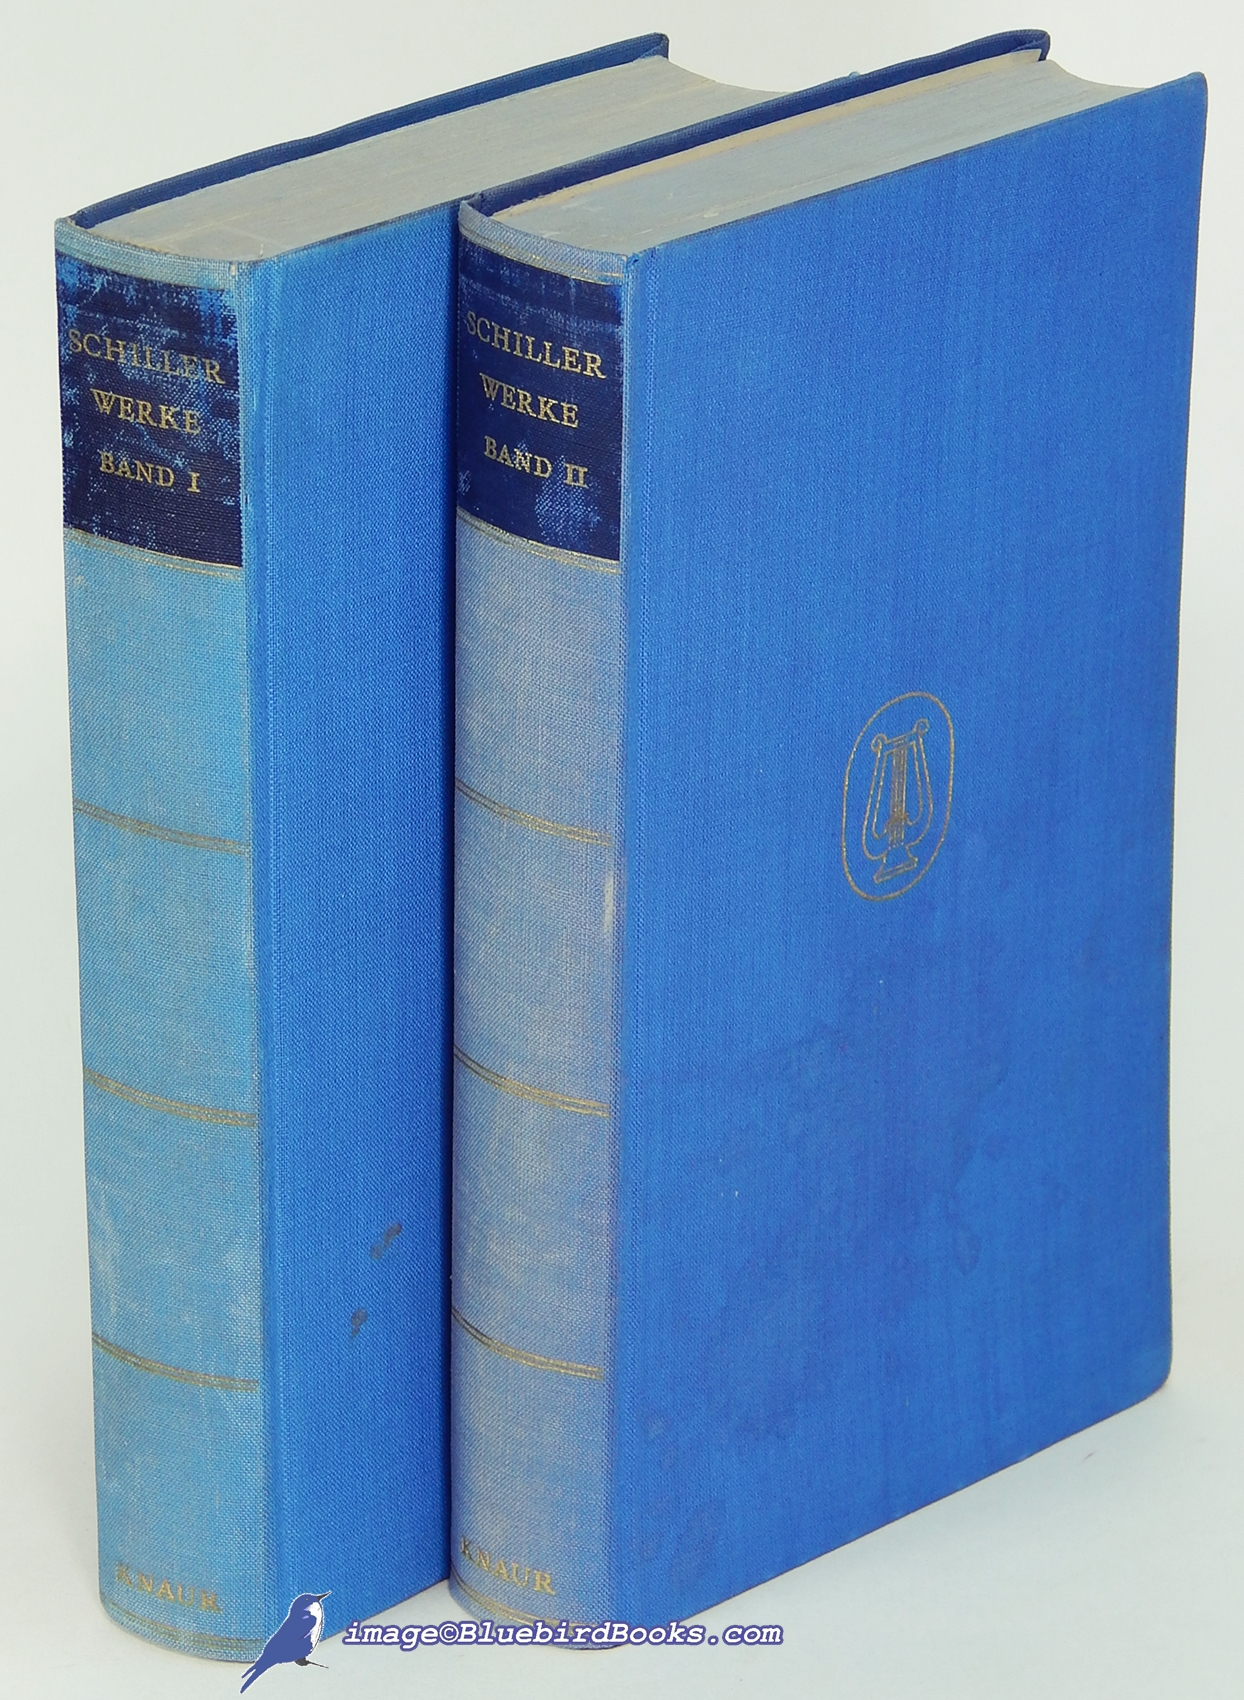 SCHILLER, FRIEDRICH - Schillers Werke in Zwei Bnden (the Works of Schiller in Two Volumes)